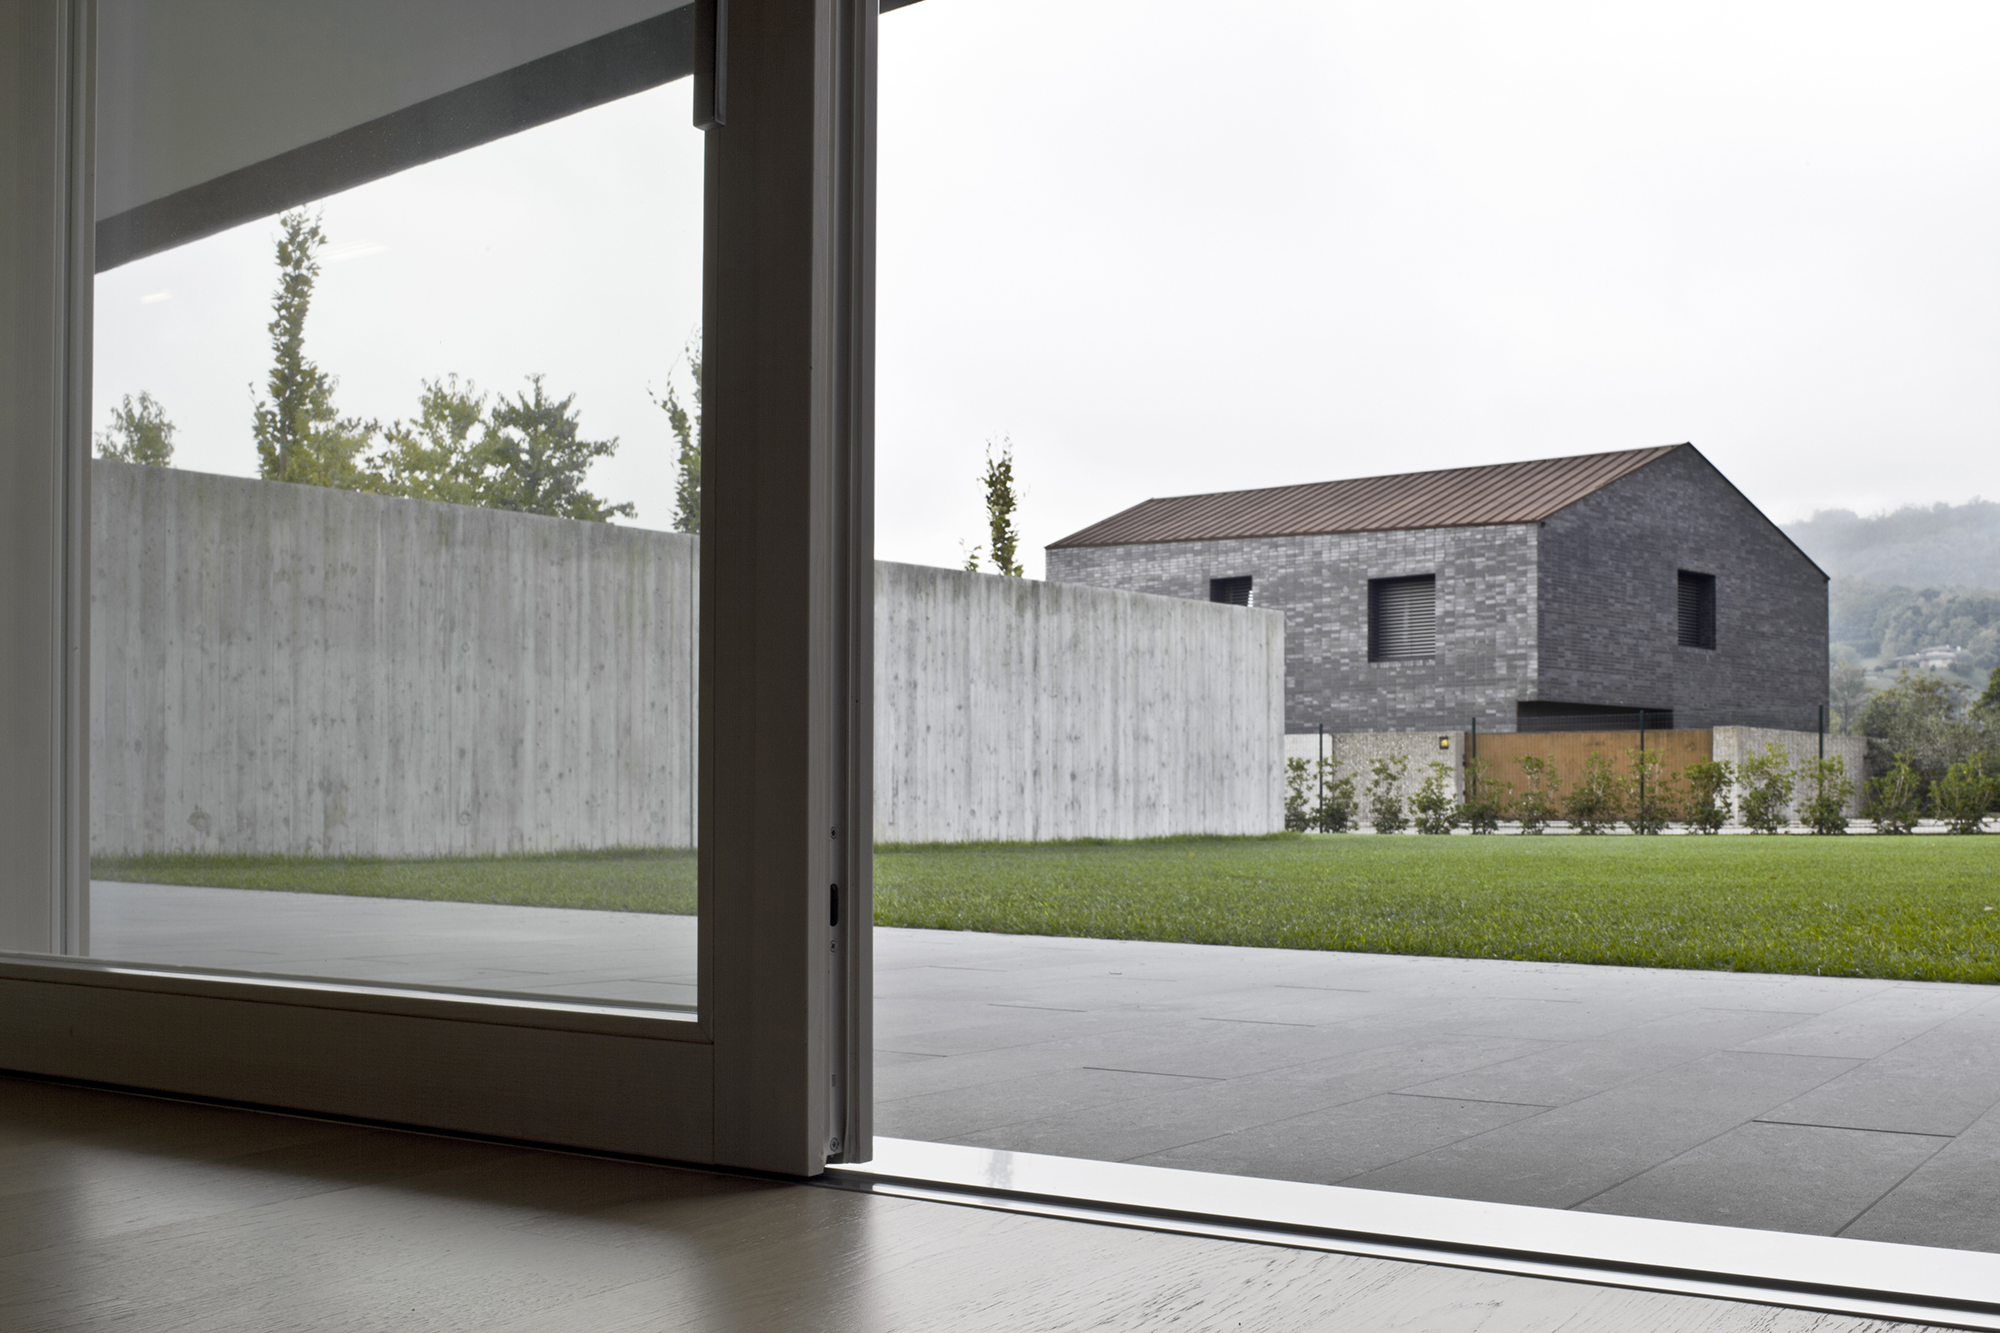 Carretta Serramenti realizzazione finestre in legno e alluminio per abitazioni e contract a zanè vicenza veneto italia agevolazione barriere architettoniche